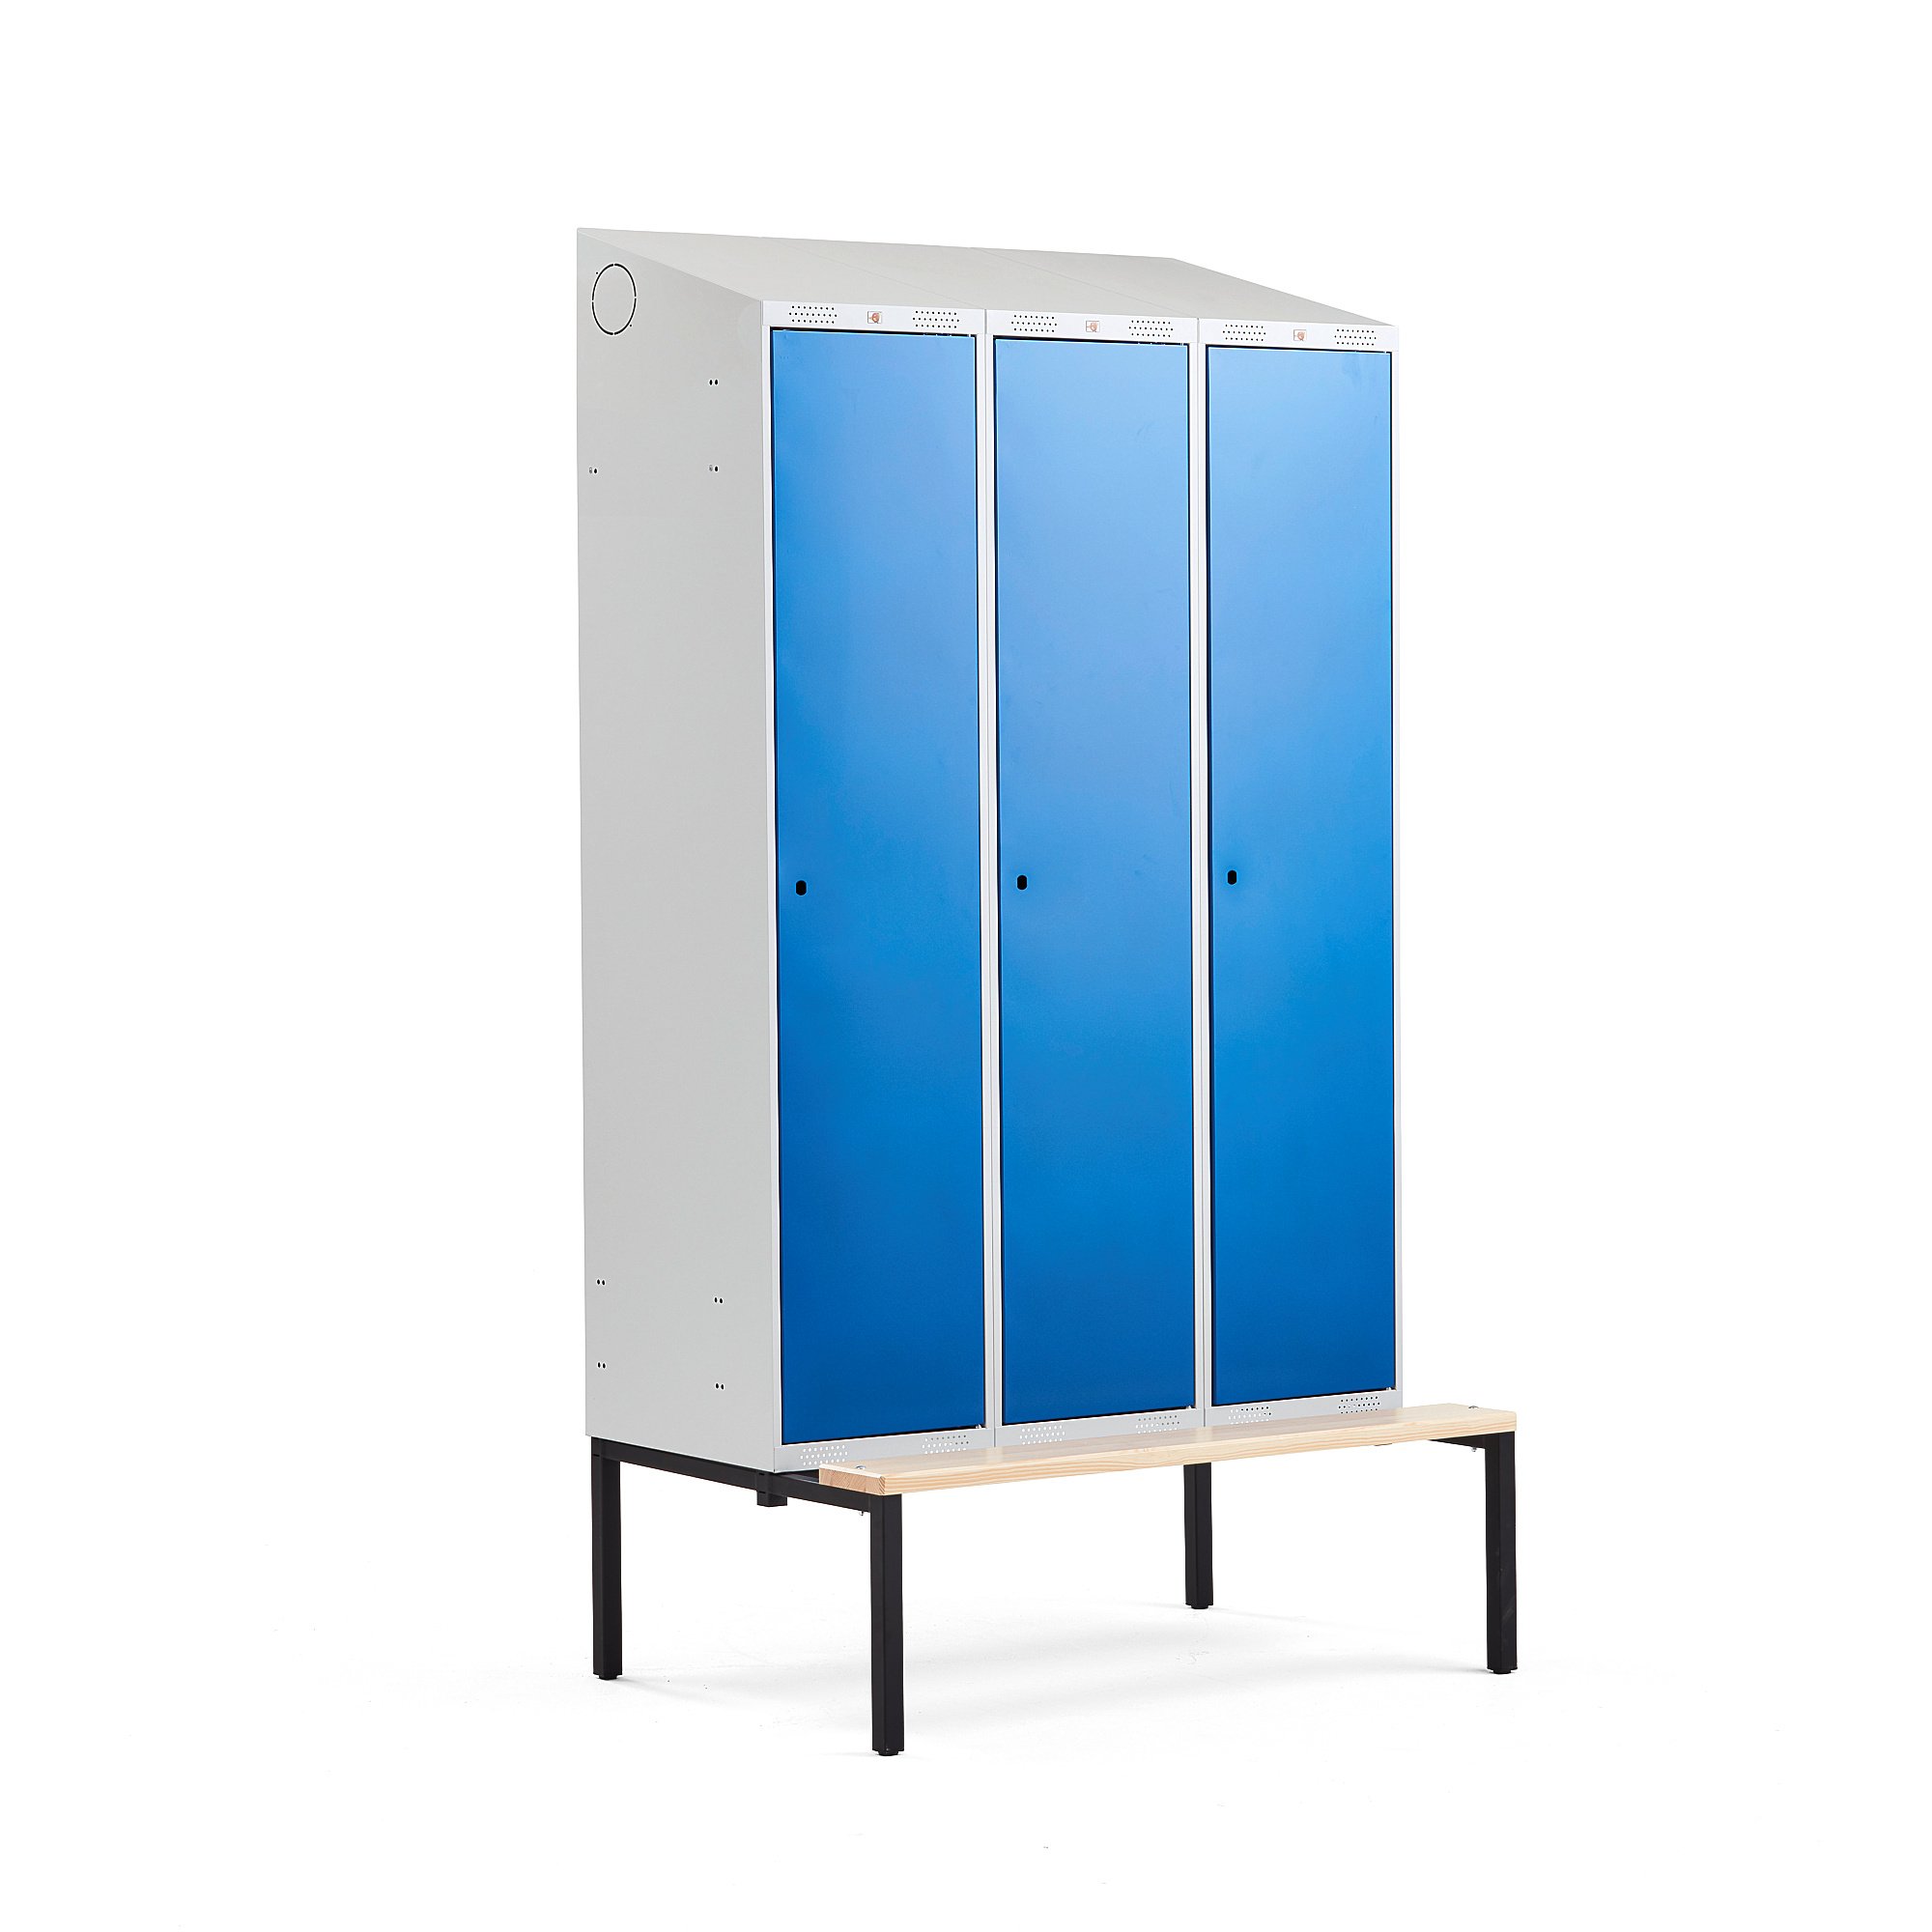 Šatní skříňka CLASSIC, šikmá střecha, s lavicí, 3 sekce, 2290x1200x550 mm, modré dveře